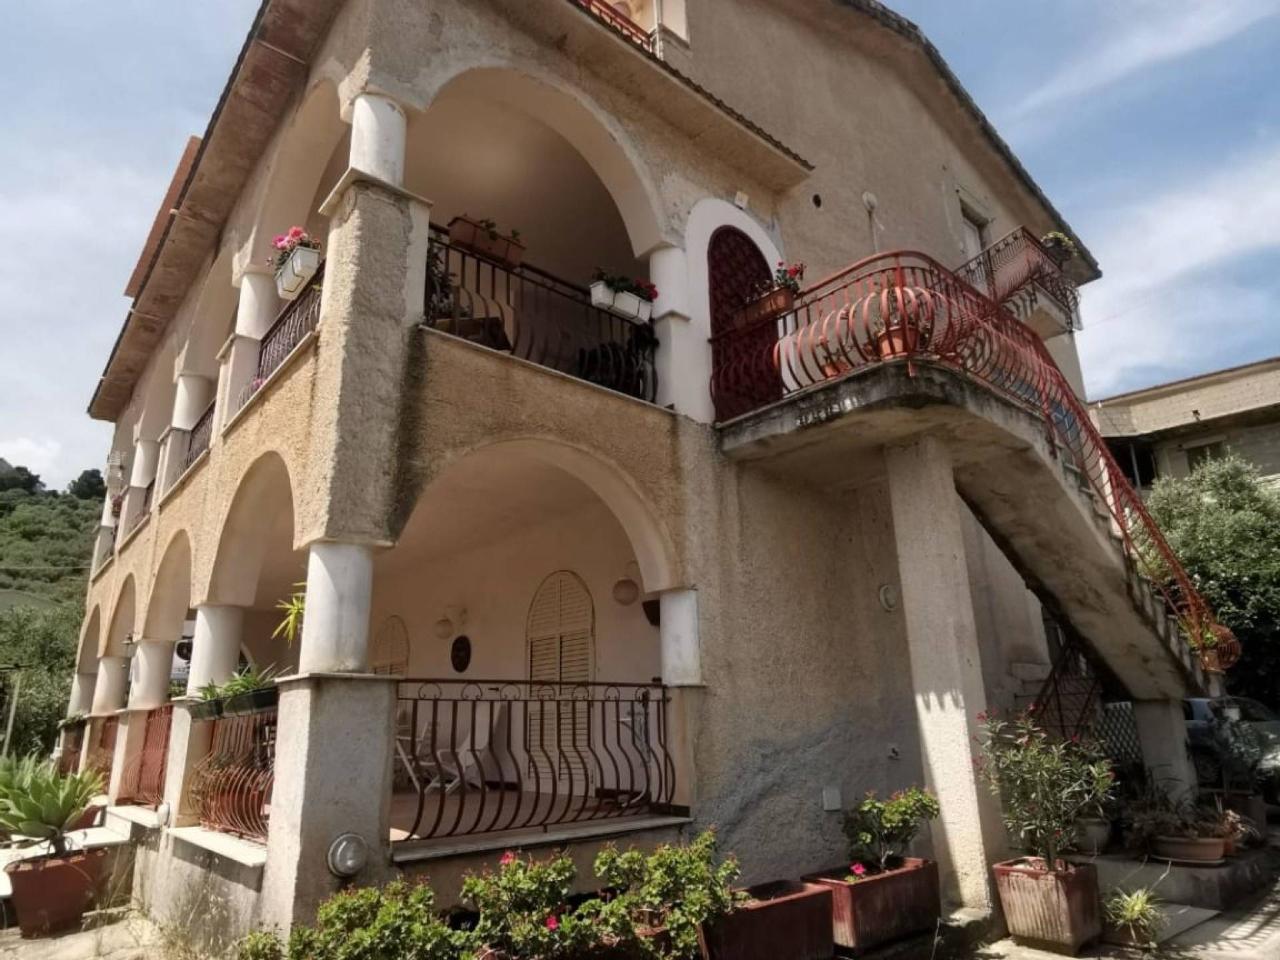 Villa in vendita a Altofonte